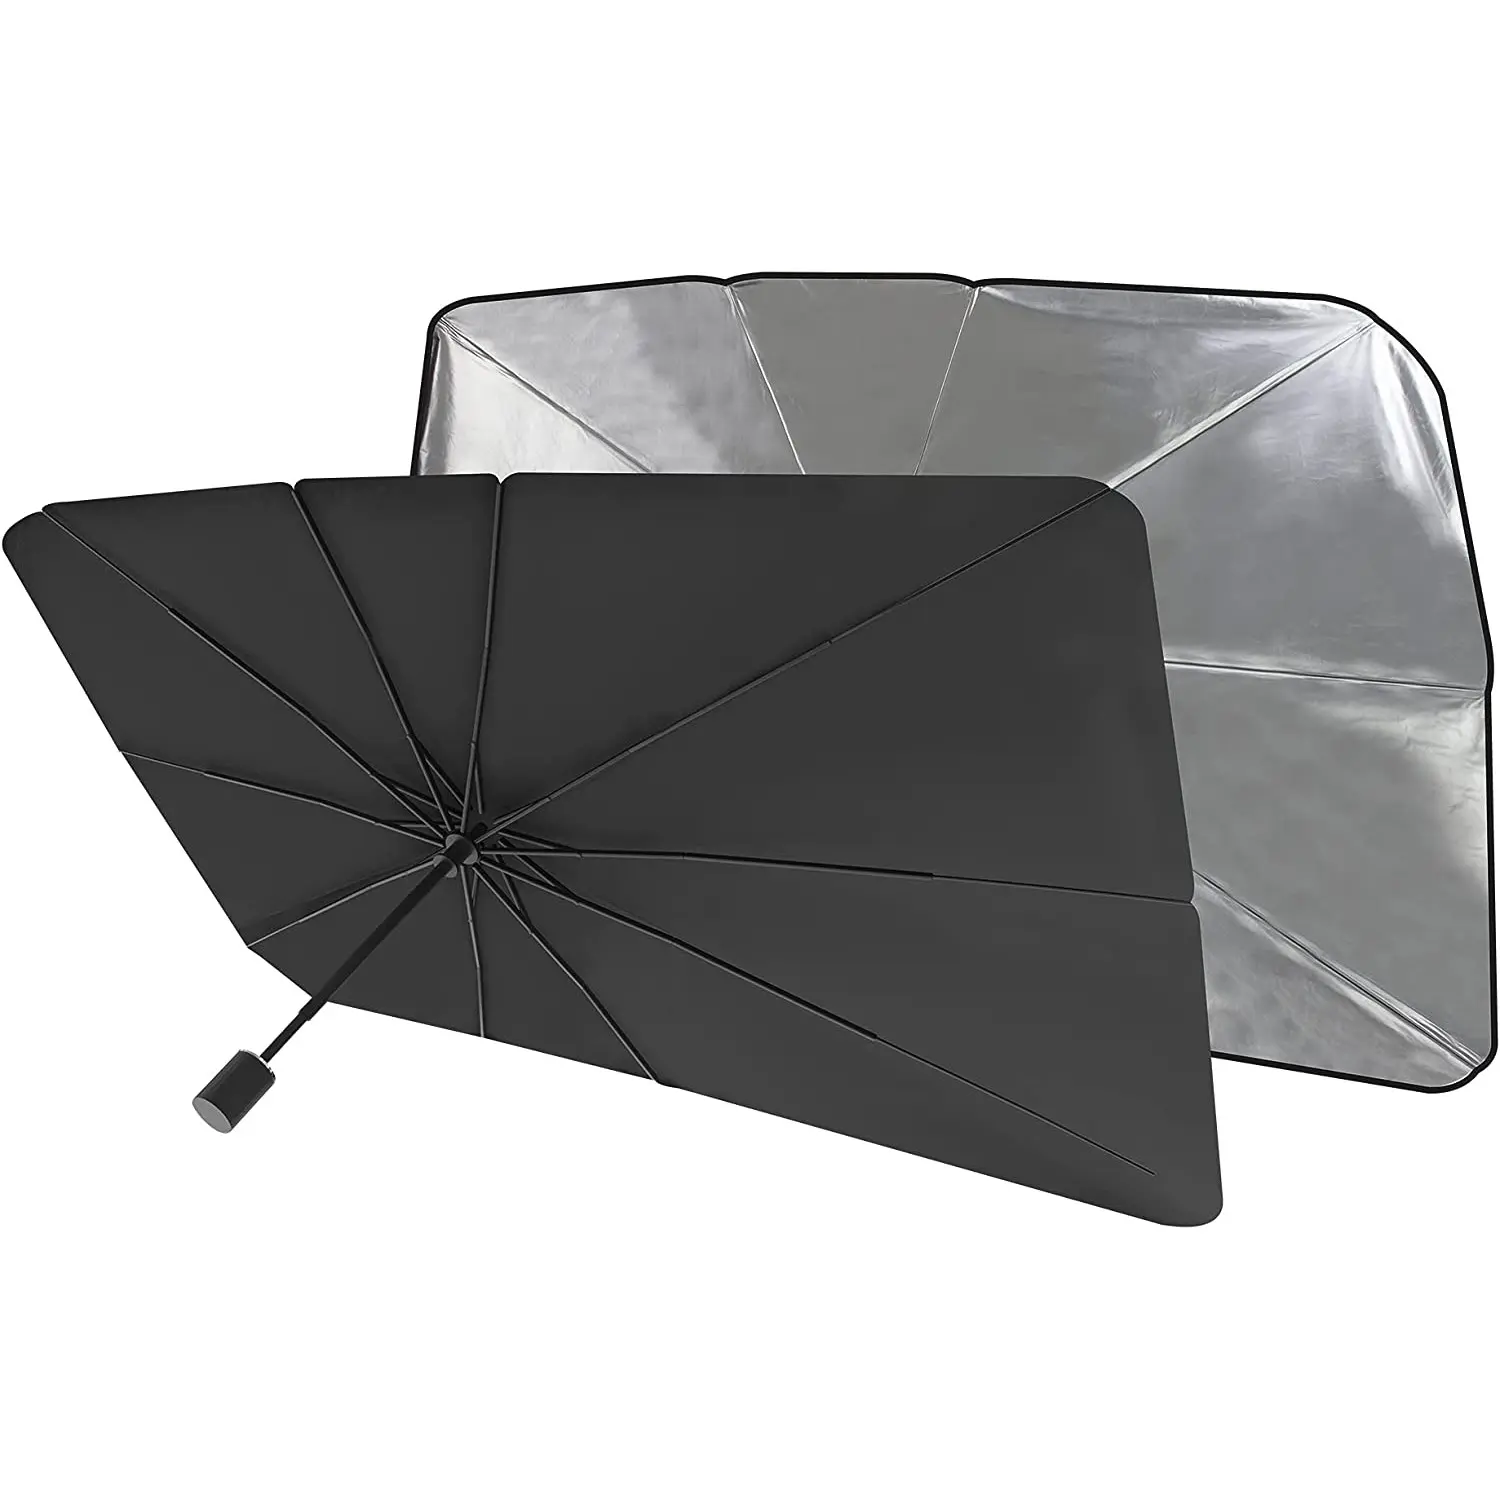 傘の日よけは、さまざまな車のロゴの伸縮式日焼け止めと断熱サンシェードでカスタマイズできます